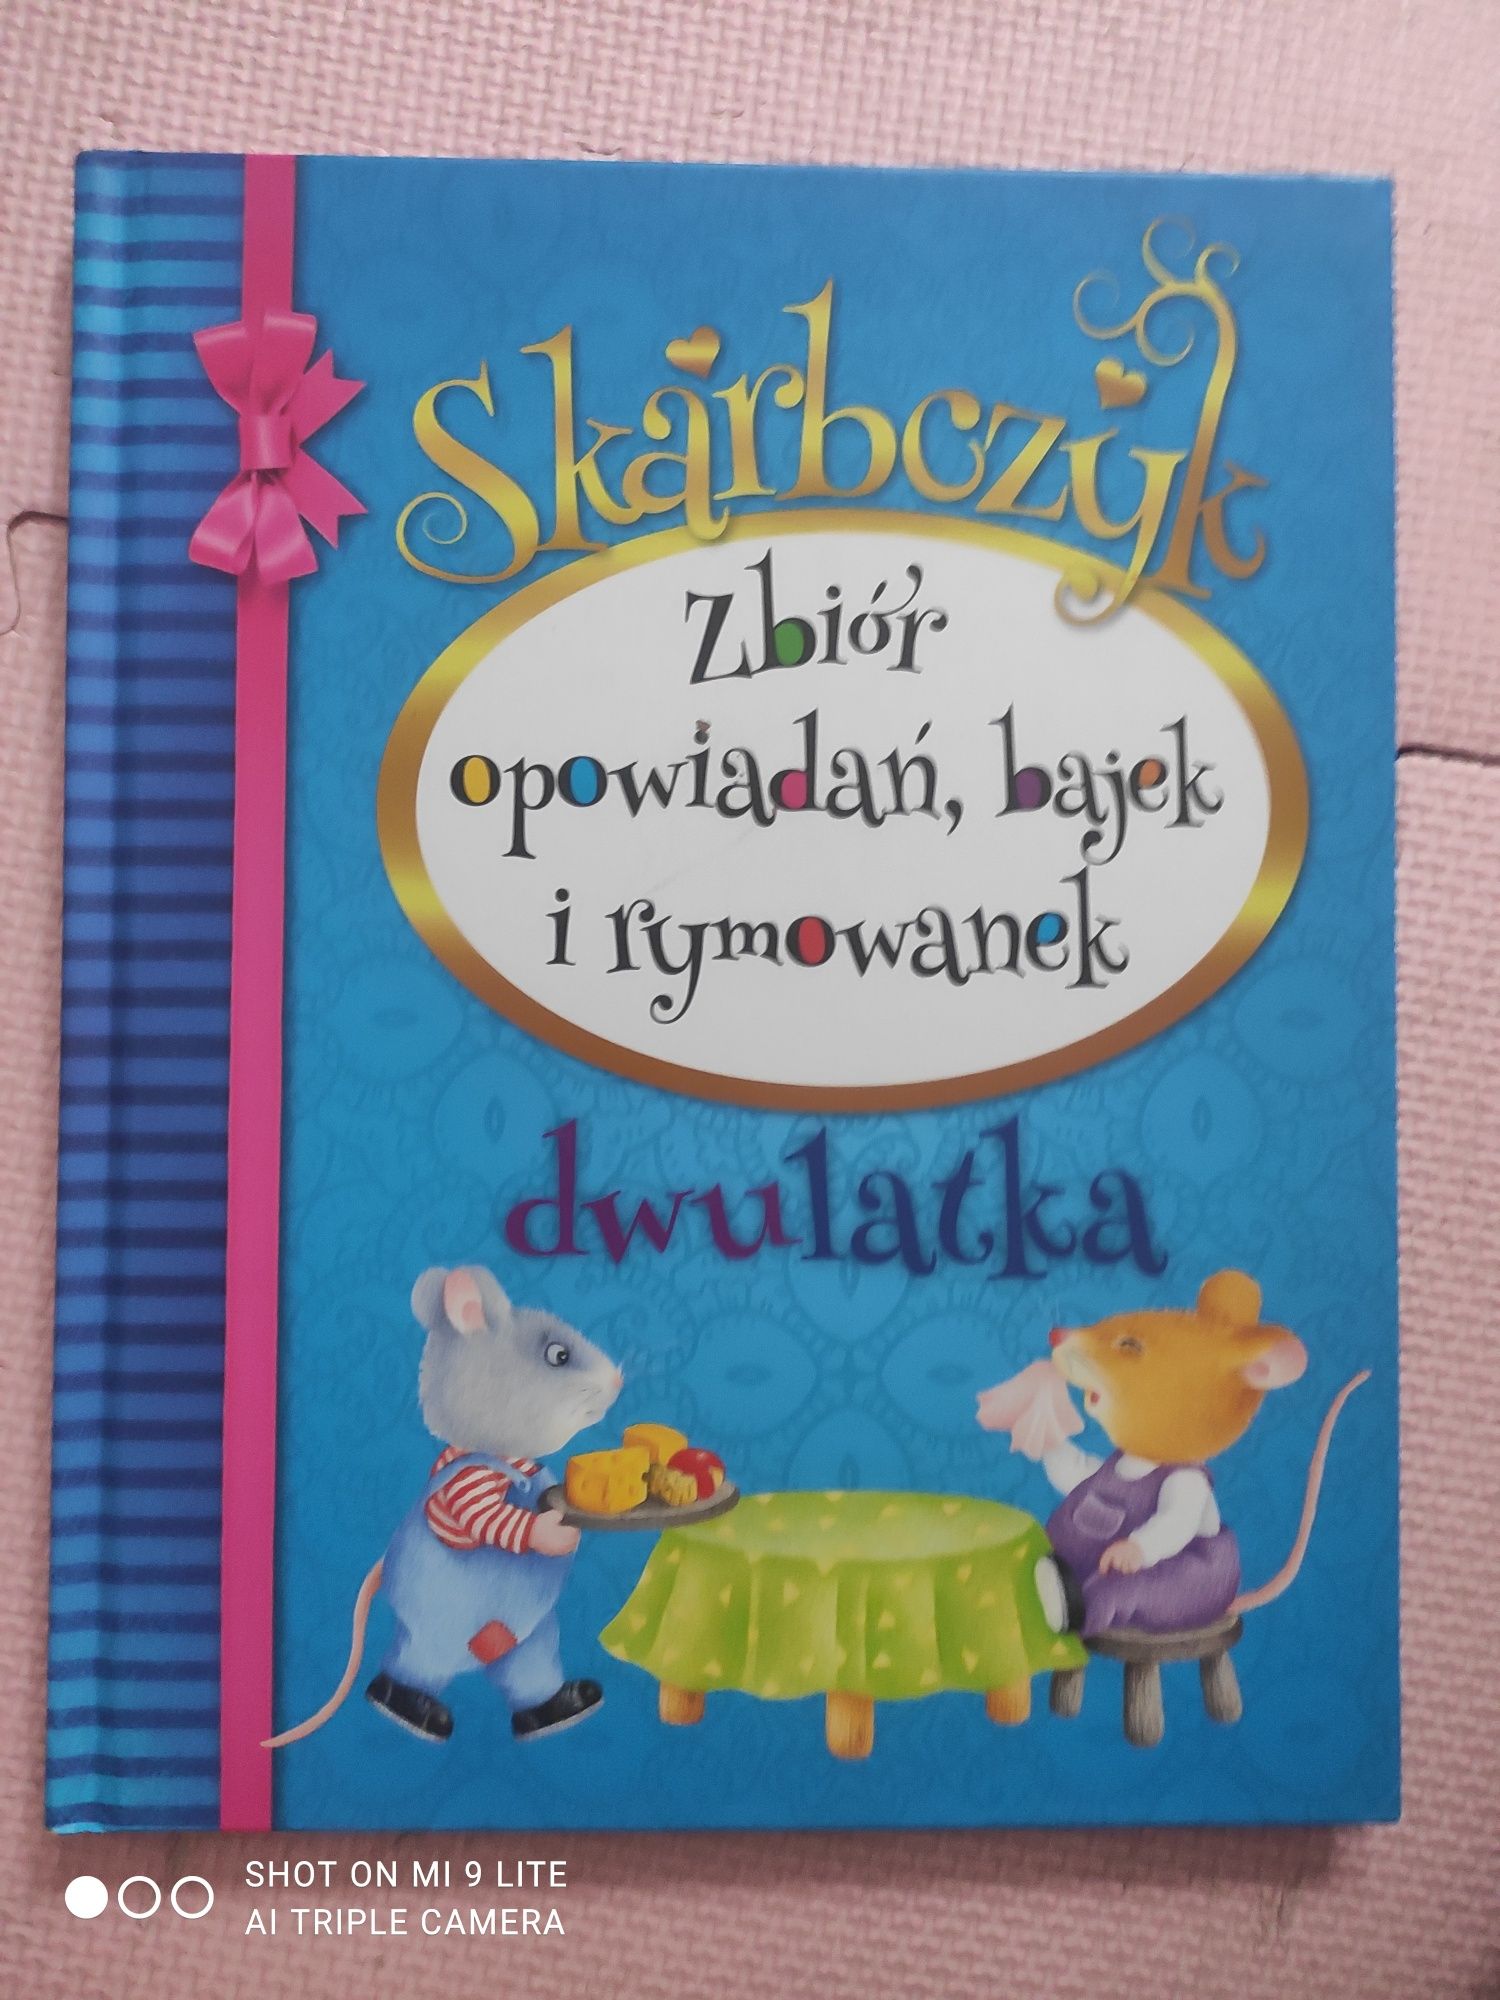 Książka dla dzieci skarbczyk dwulatka zbiór opowiadań bajek i rymowane